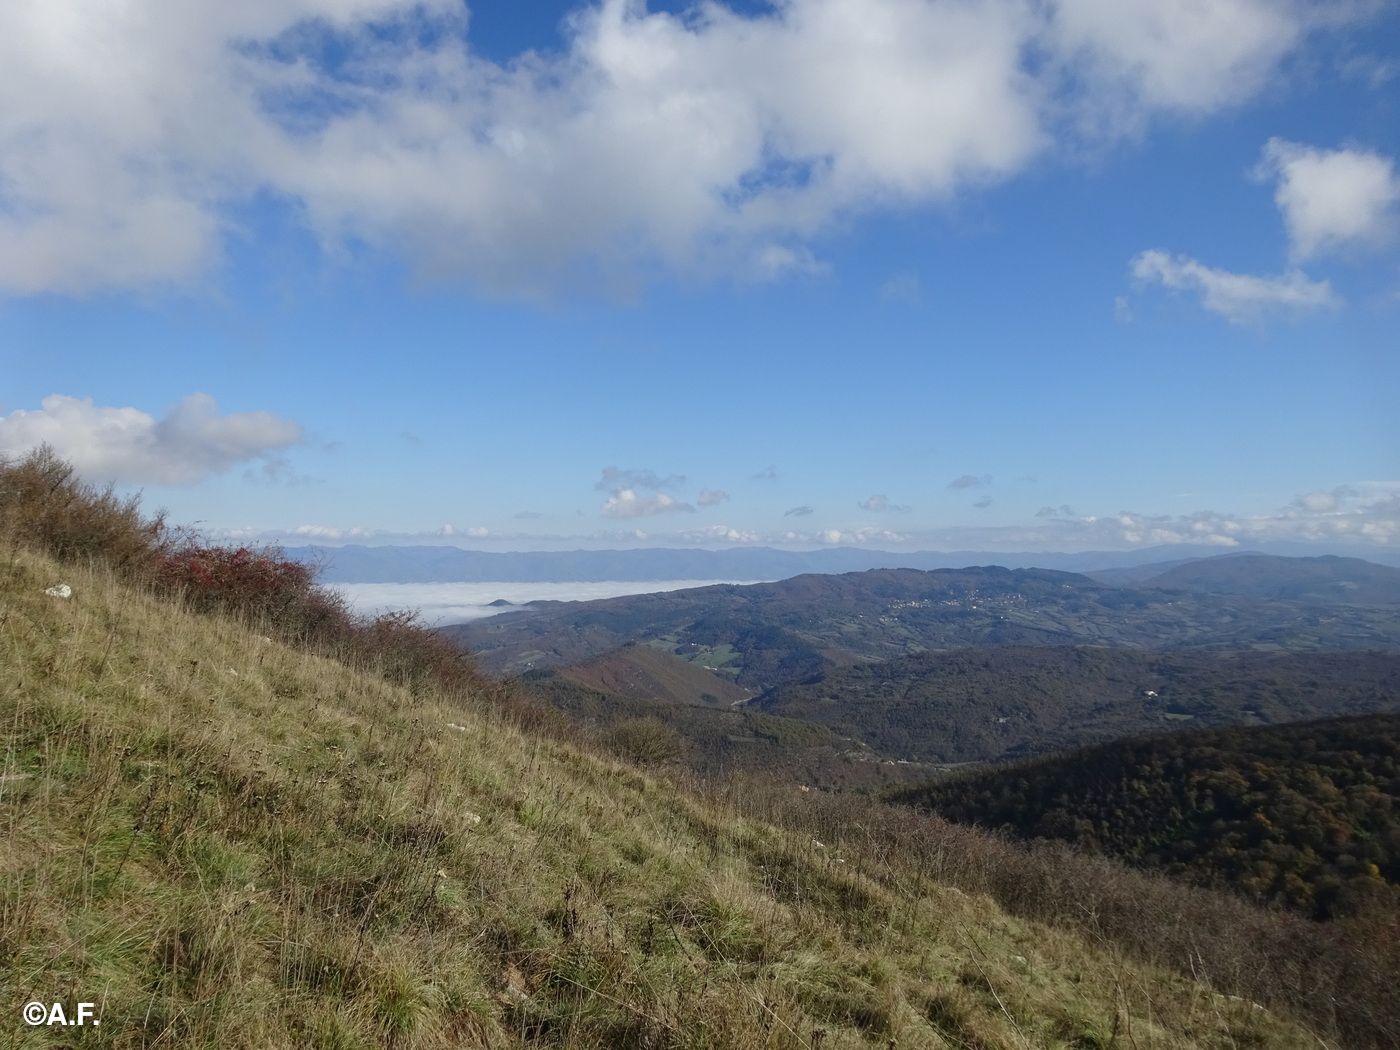 Panorama dal Poggio all'Aia verso la conca del Mugello (invasa dalla nebbia) e il crinale appenninico